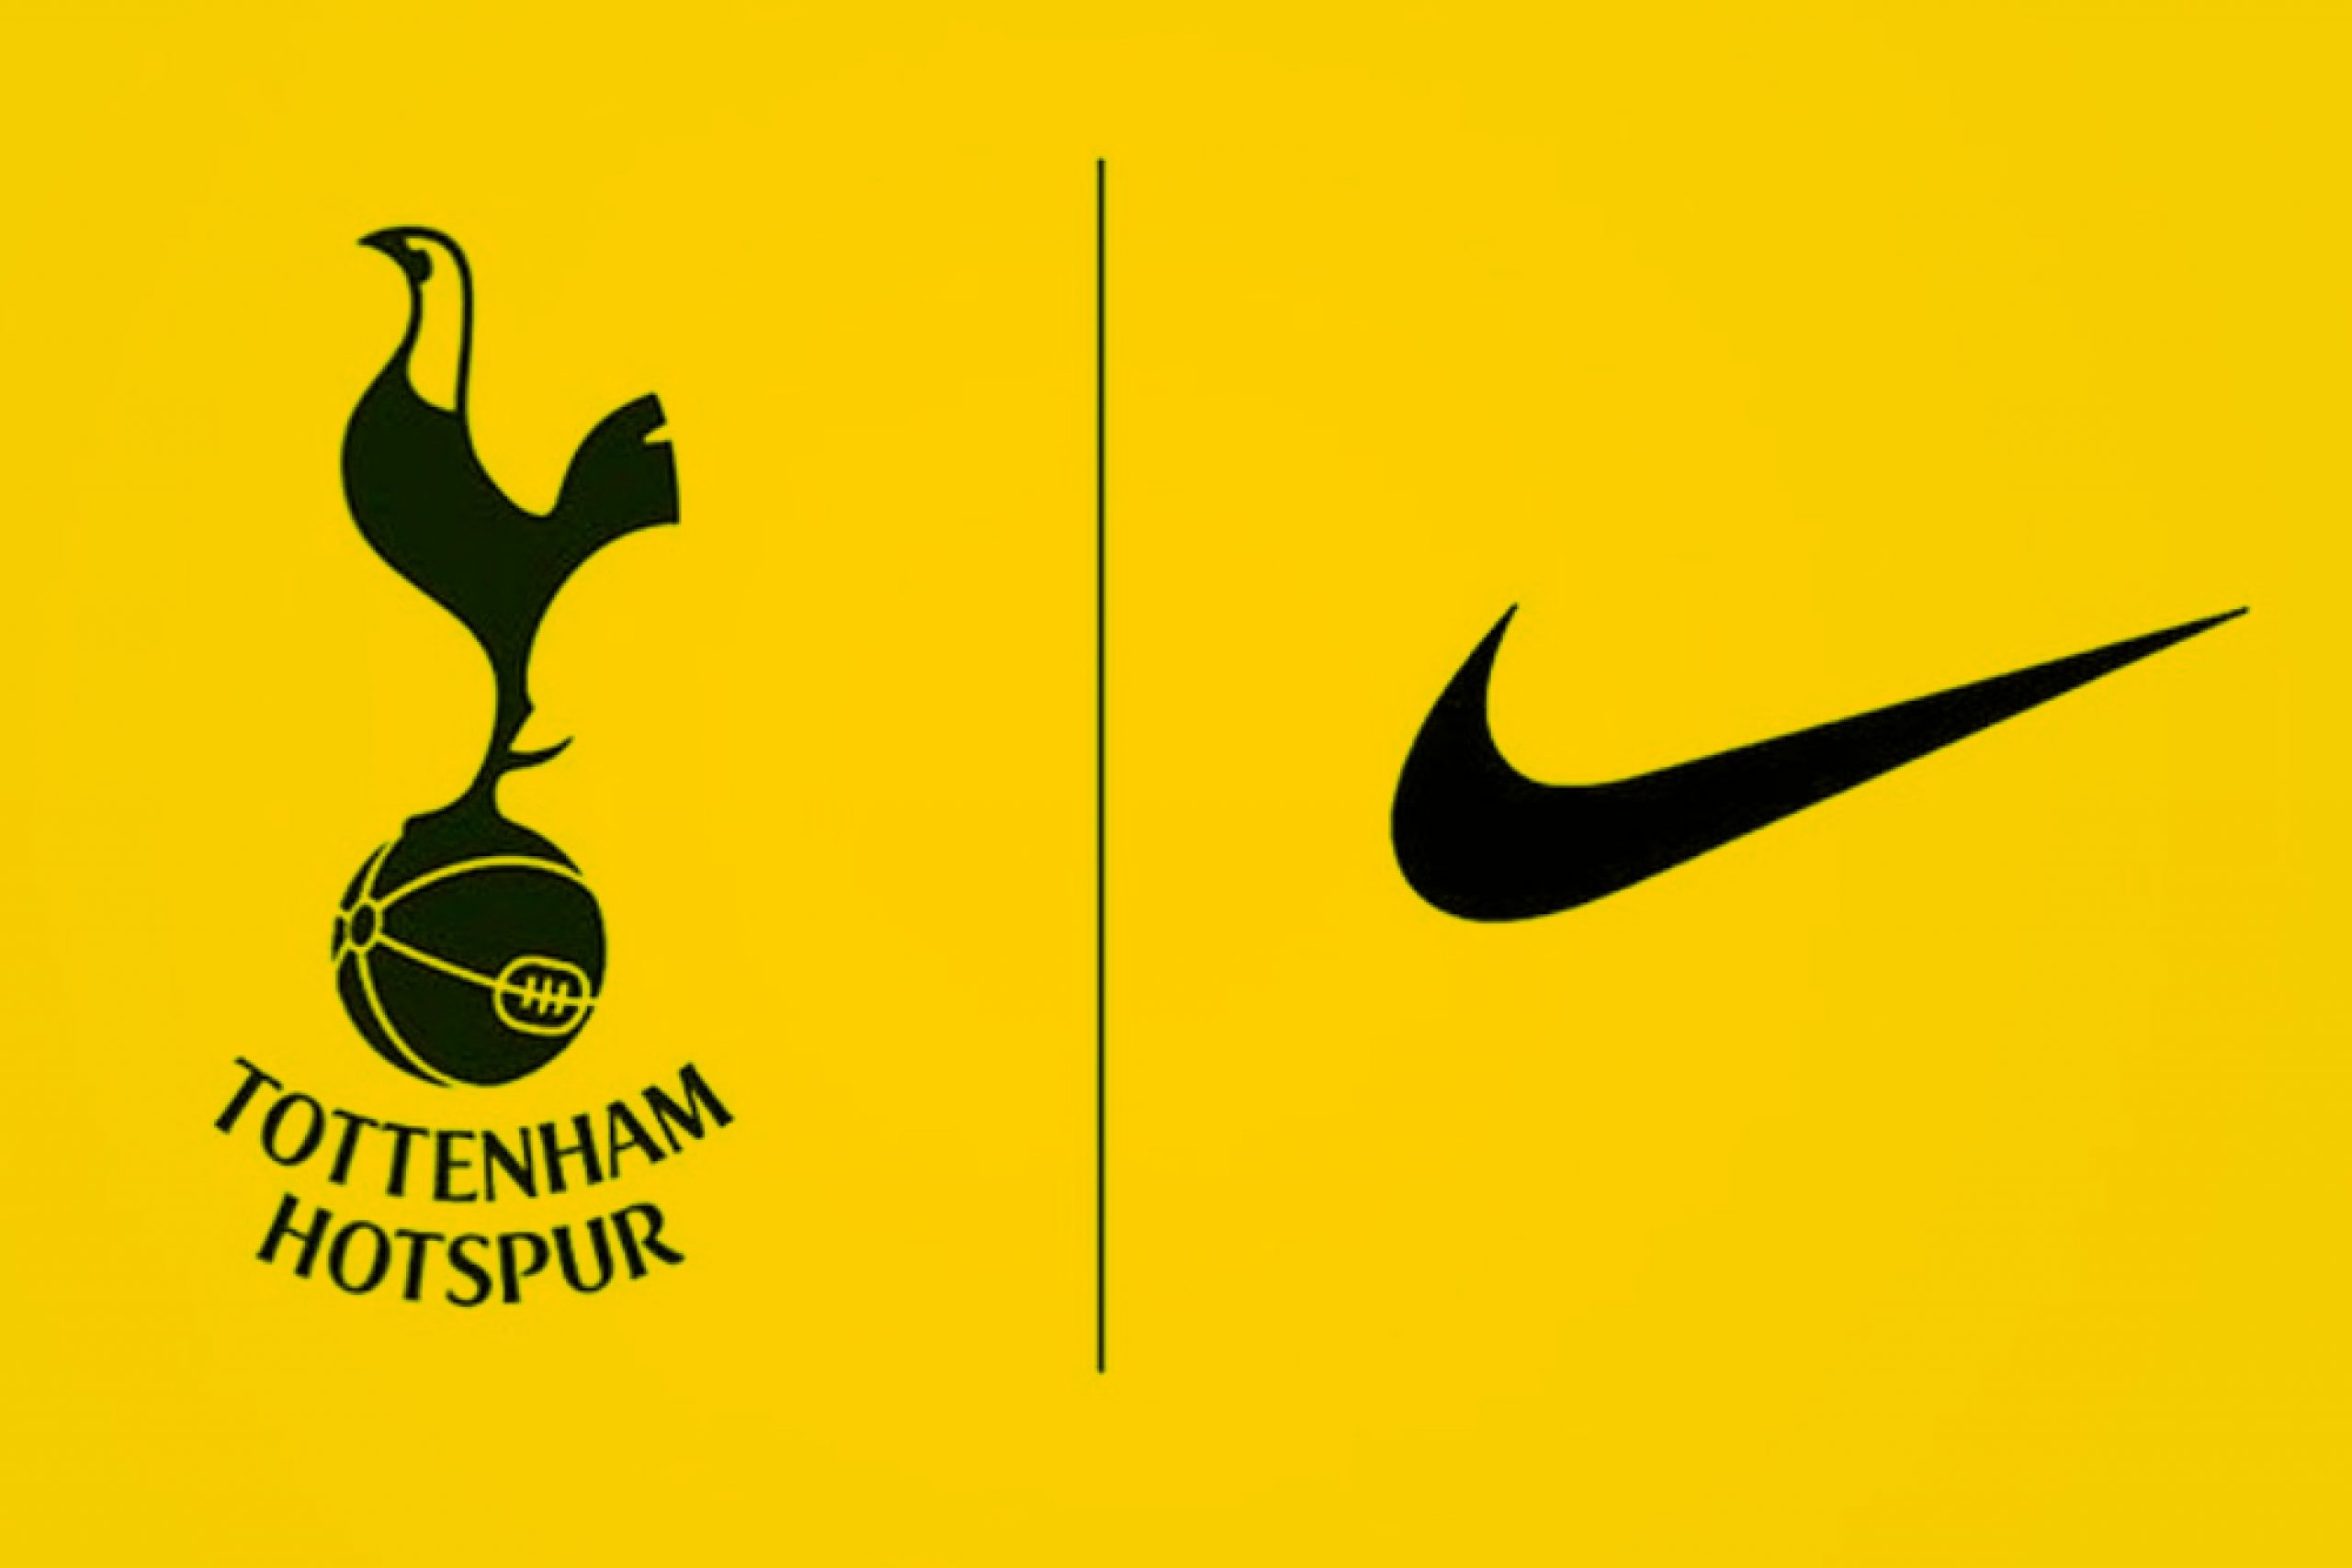 Tottenham Hotspur and Nike logo